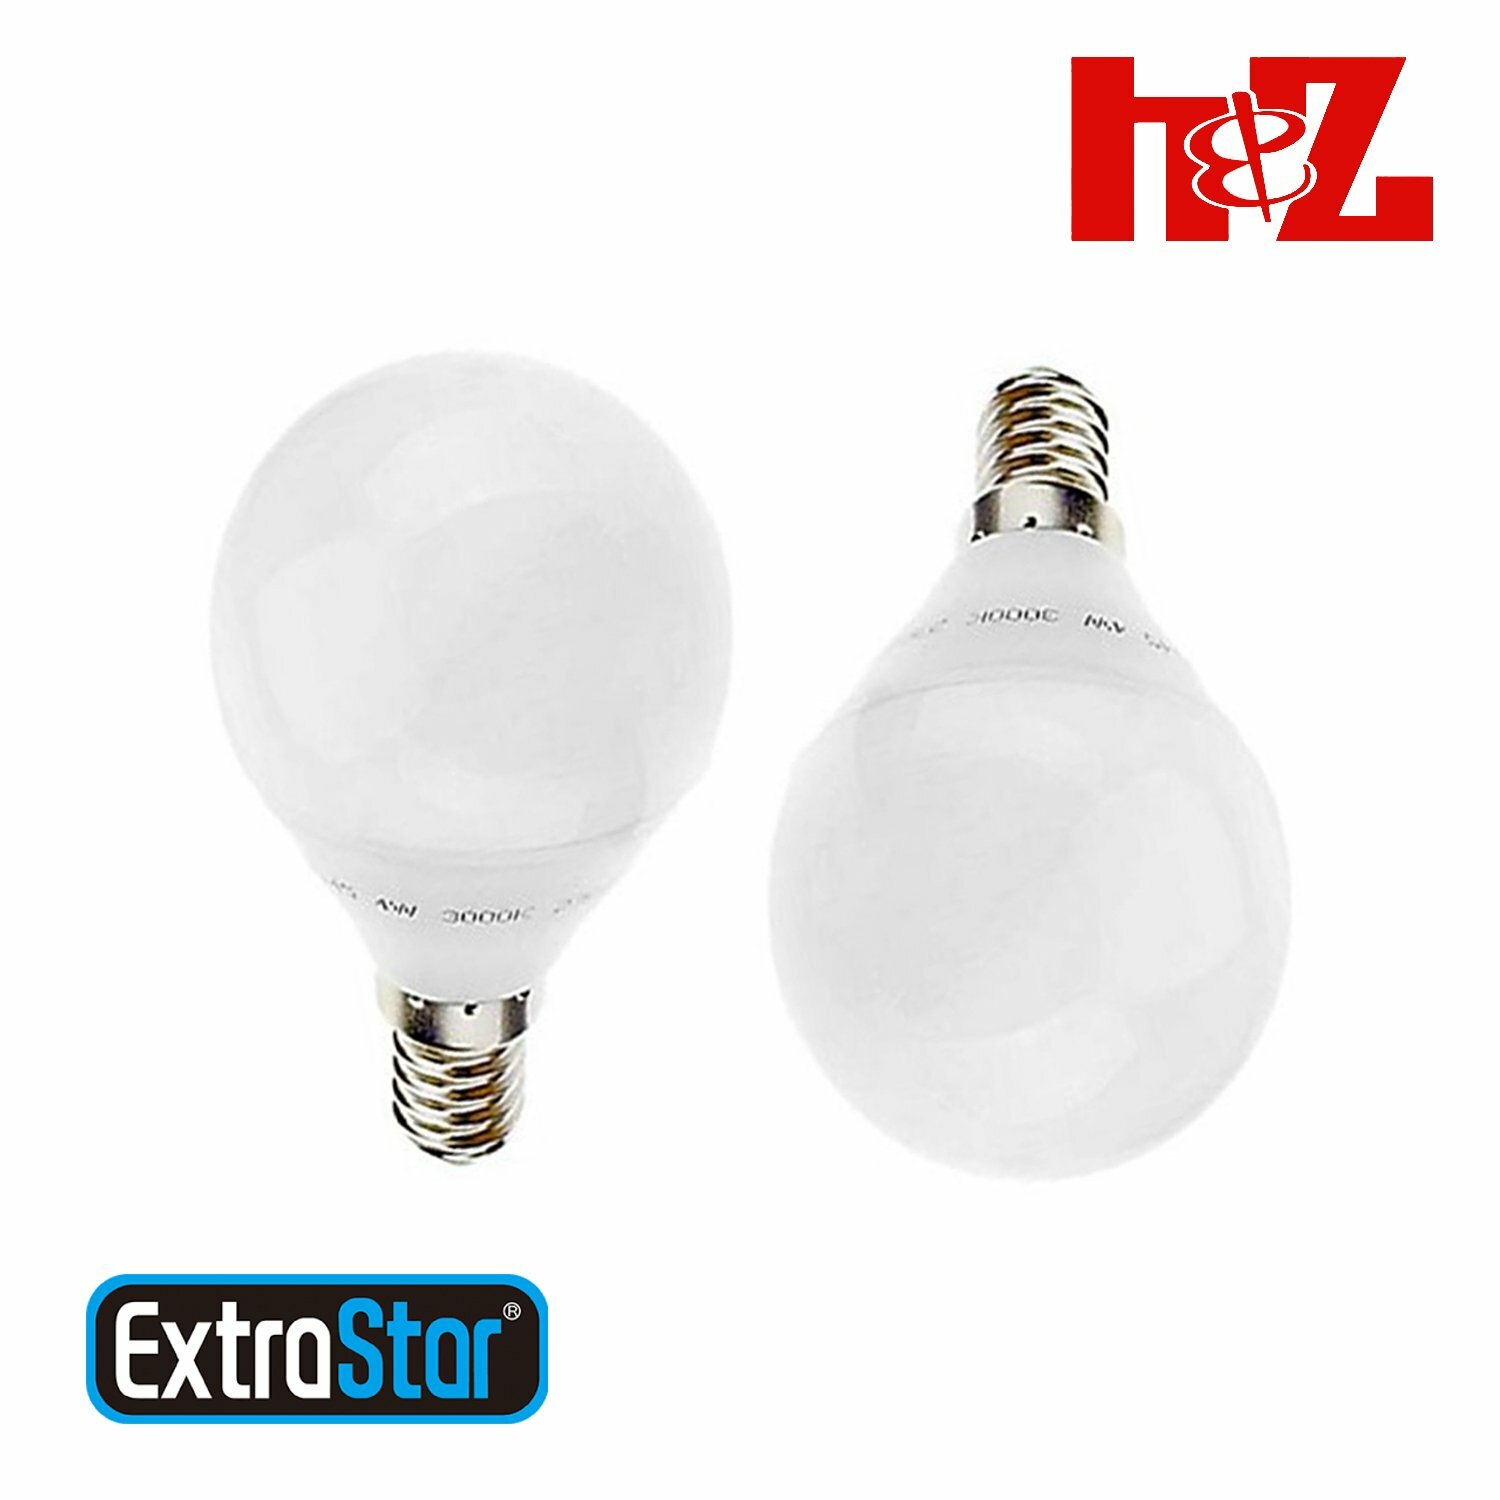 2x Lampadine a LED 4W E14 attacco piccolo Luce Fredda 6500k 320 lumen  Extrastar - H&Z Store